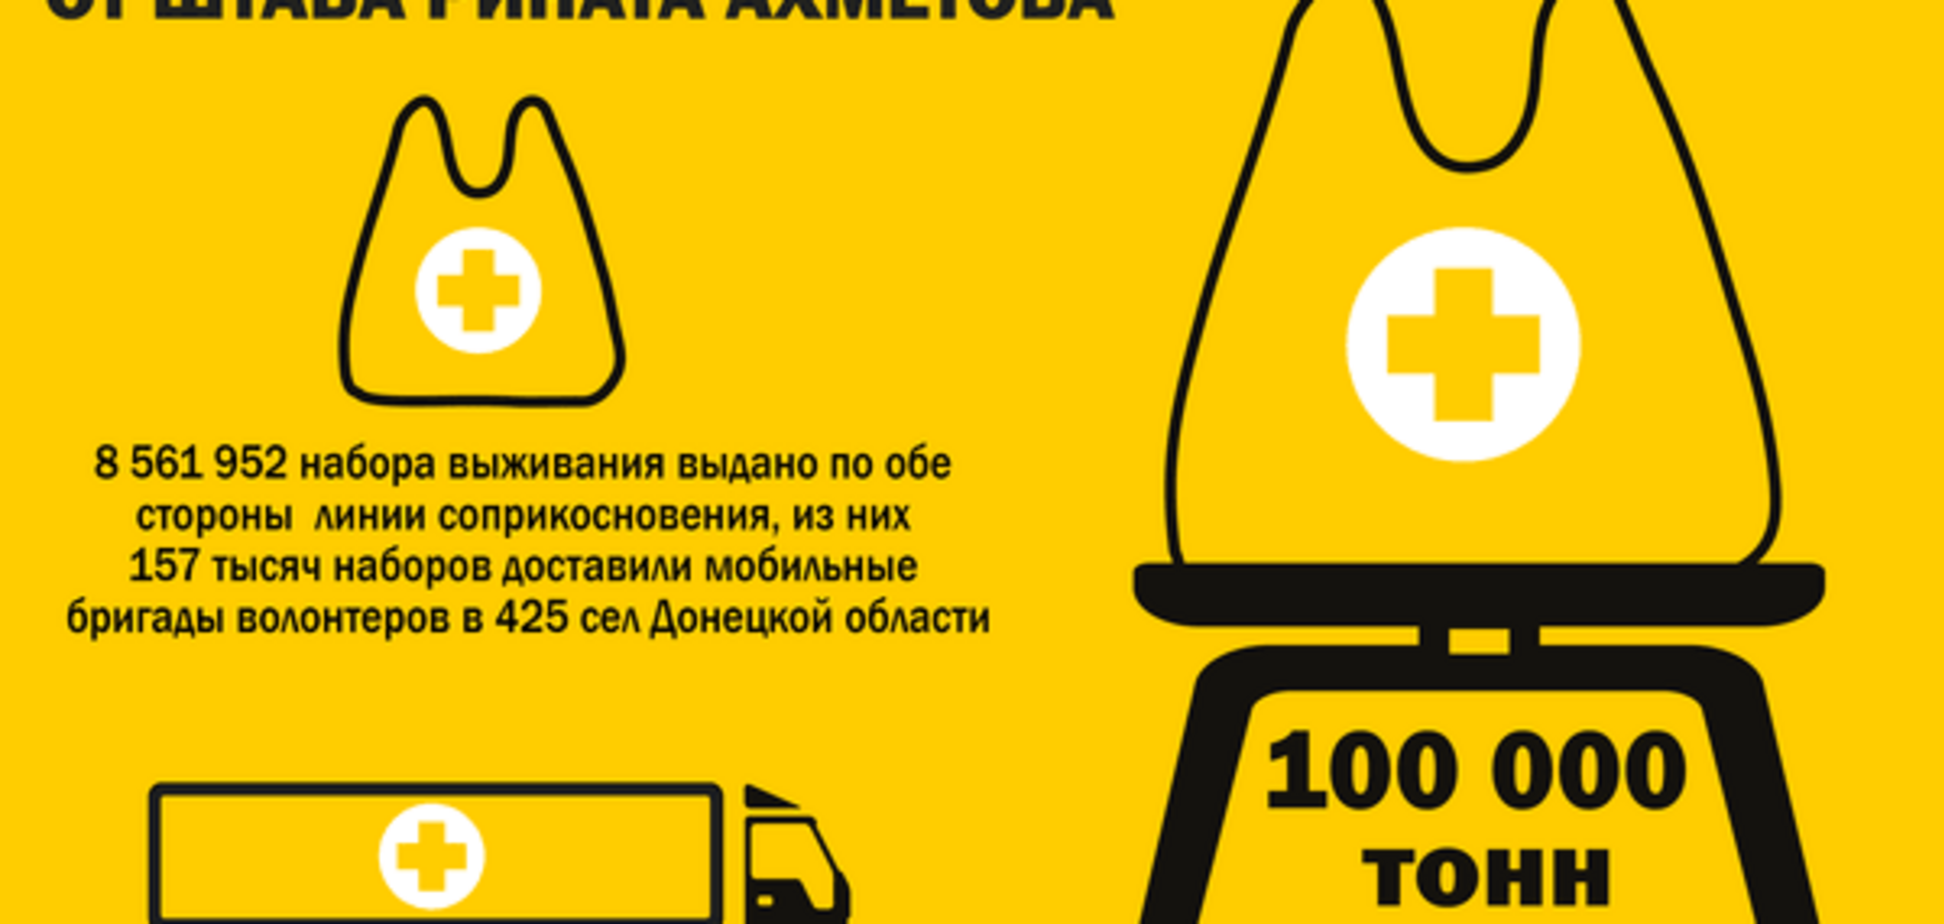 Более 100 тысяч тонн гуманитарной помощи доставил Штаб Ахметова мирным жителям Донбасса